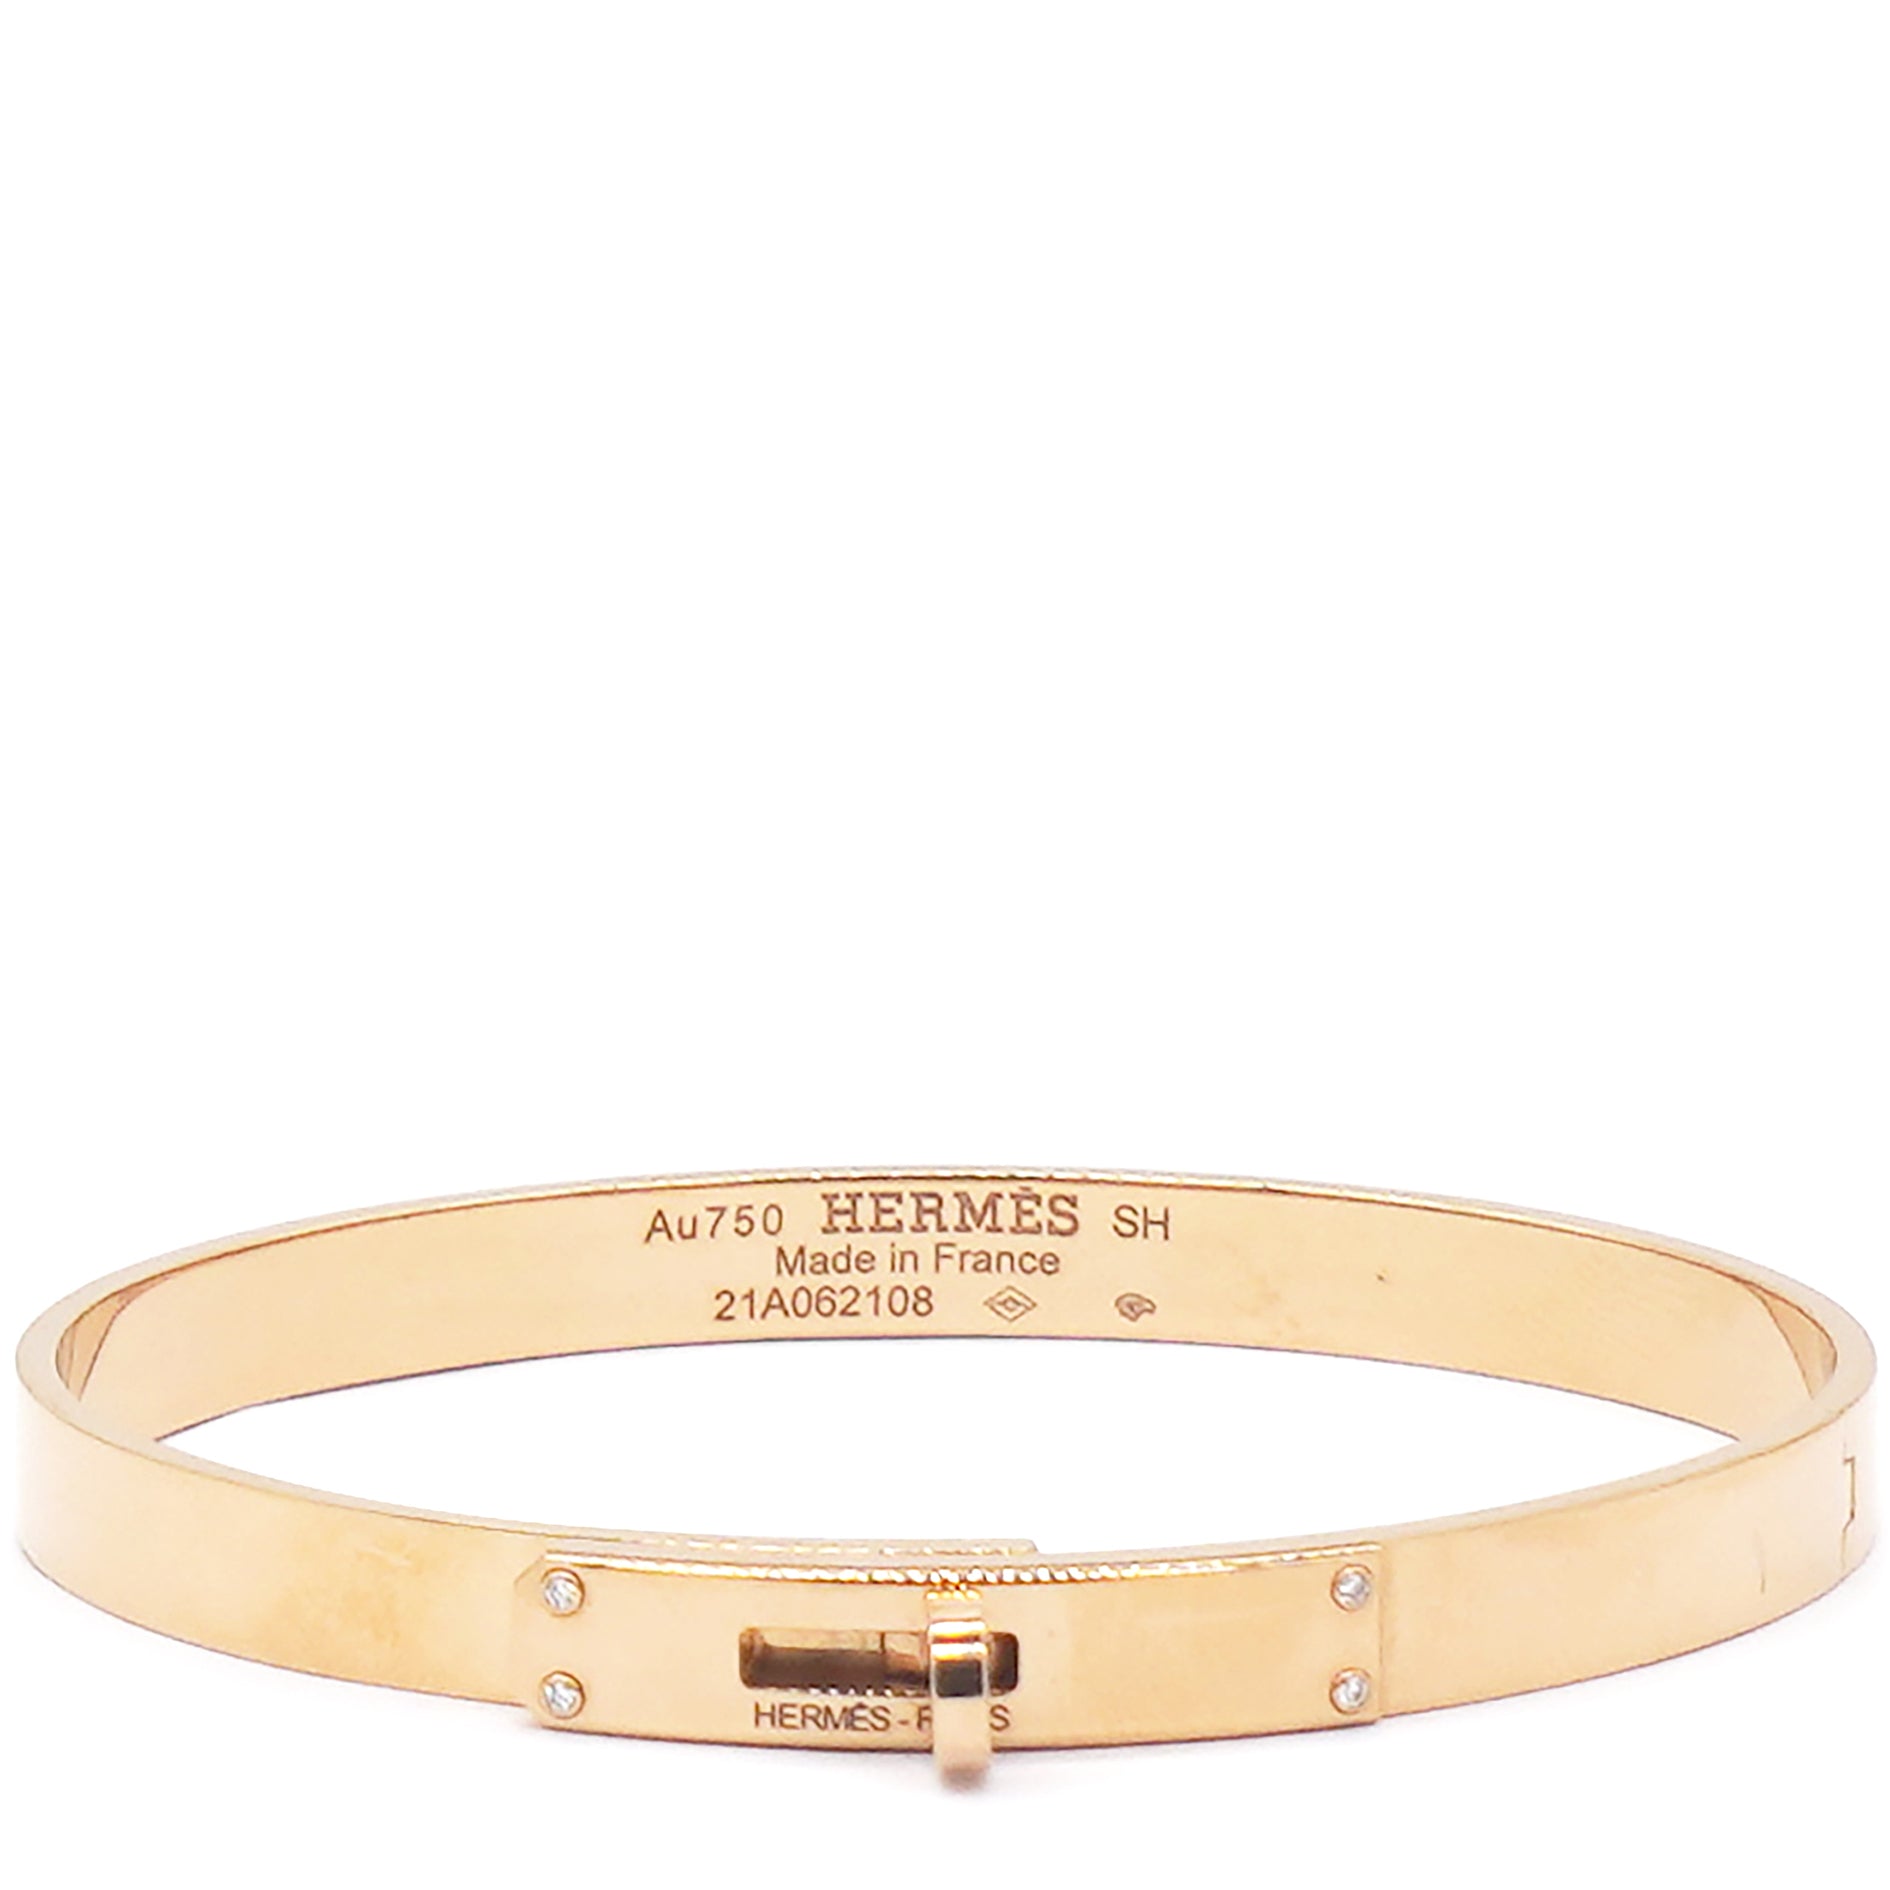 Share more than 78 hermes bracelet gold super hot - 3tdesign.edu.vn